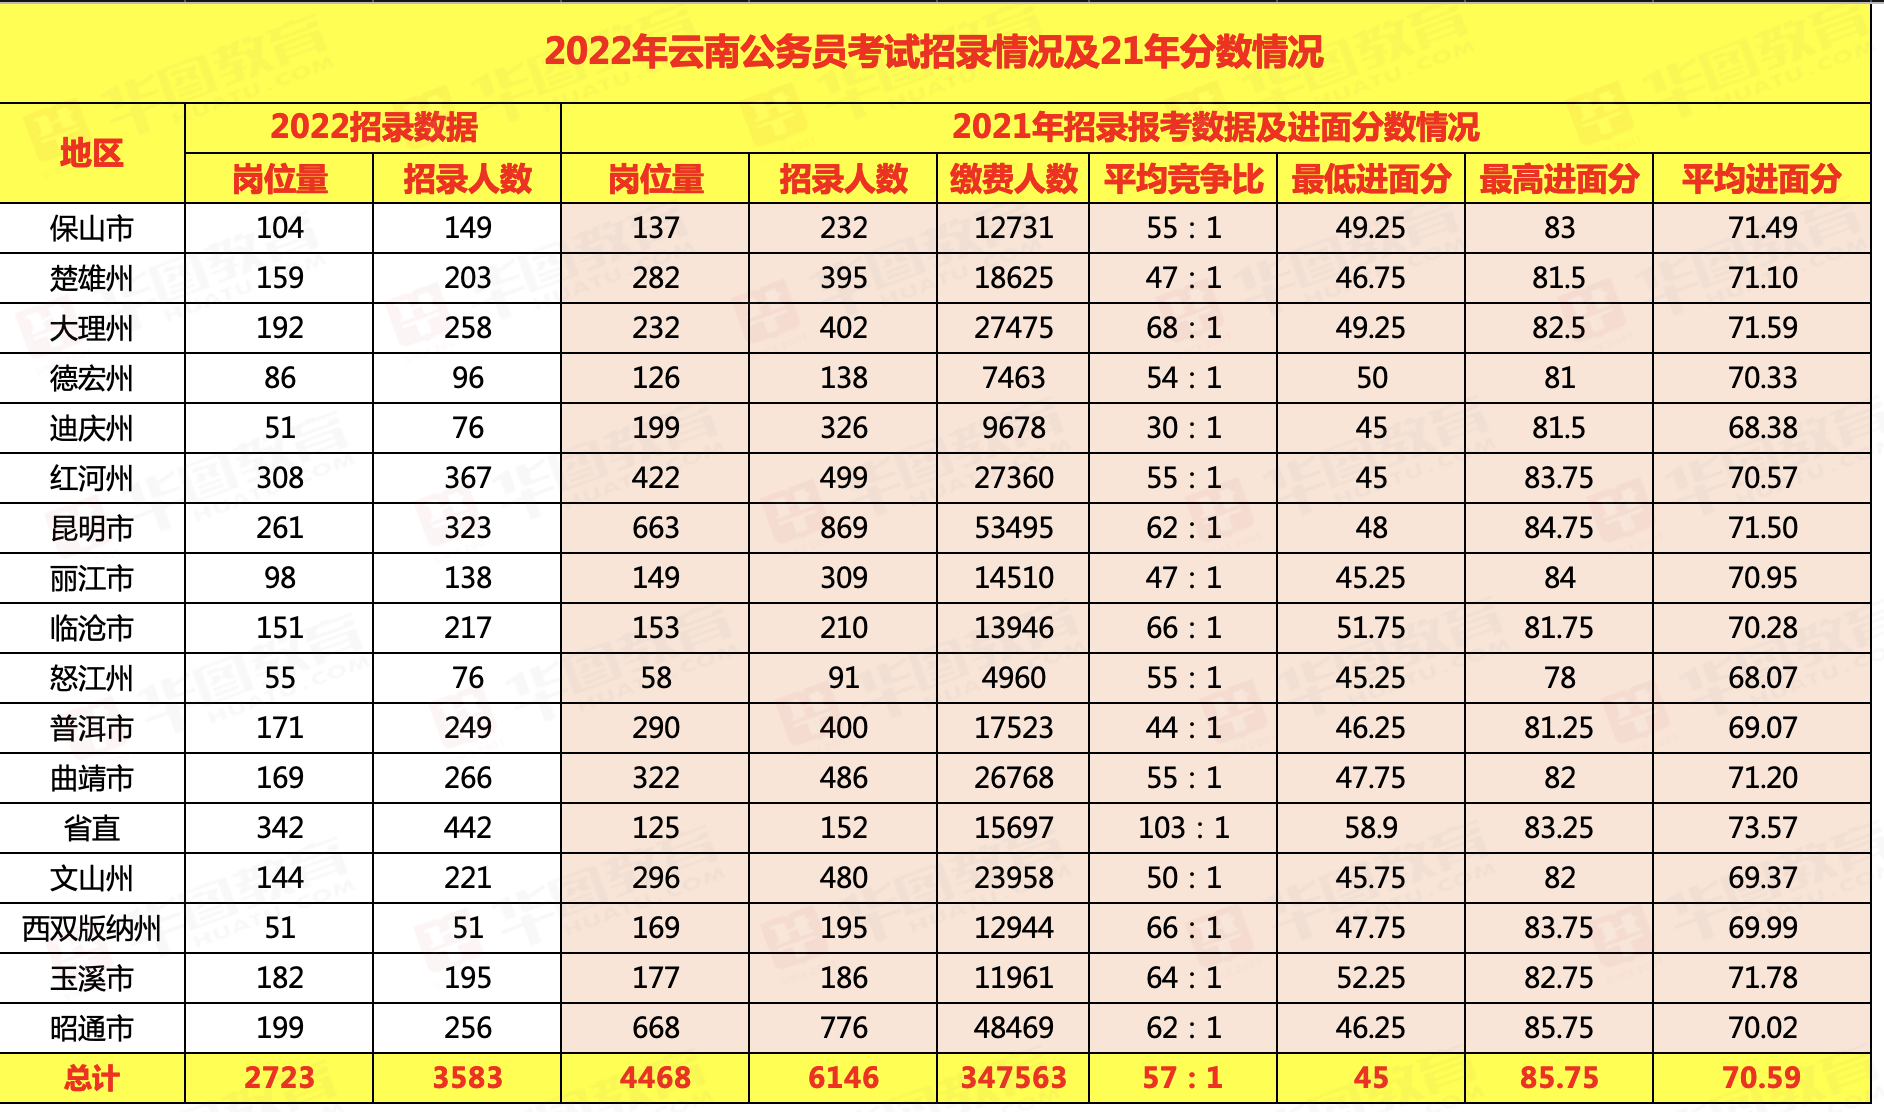 2022云南公务员考试招录情况及21年分数分析